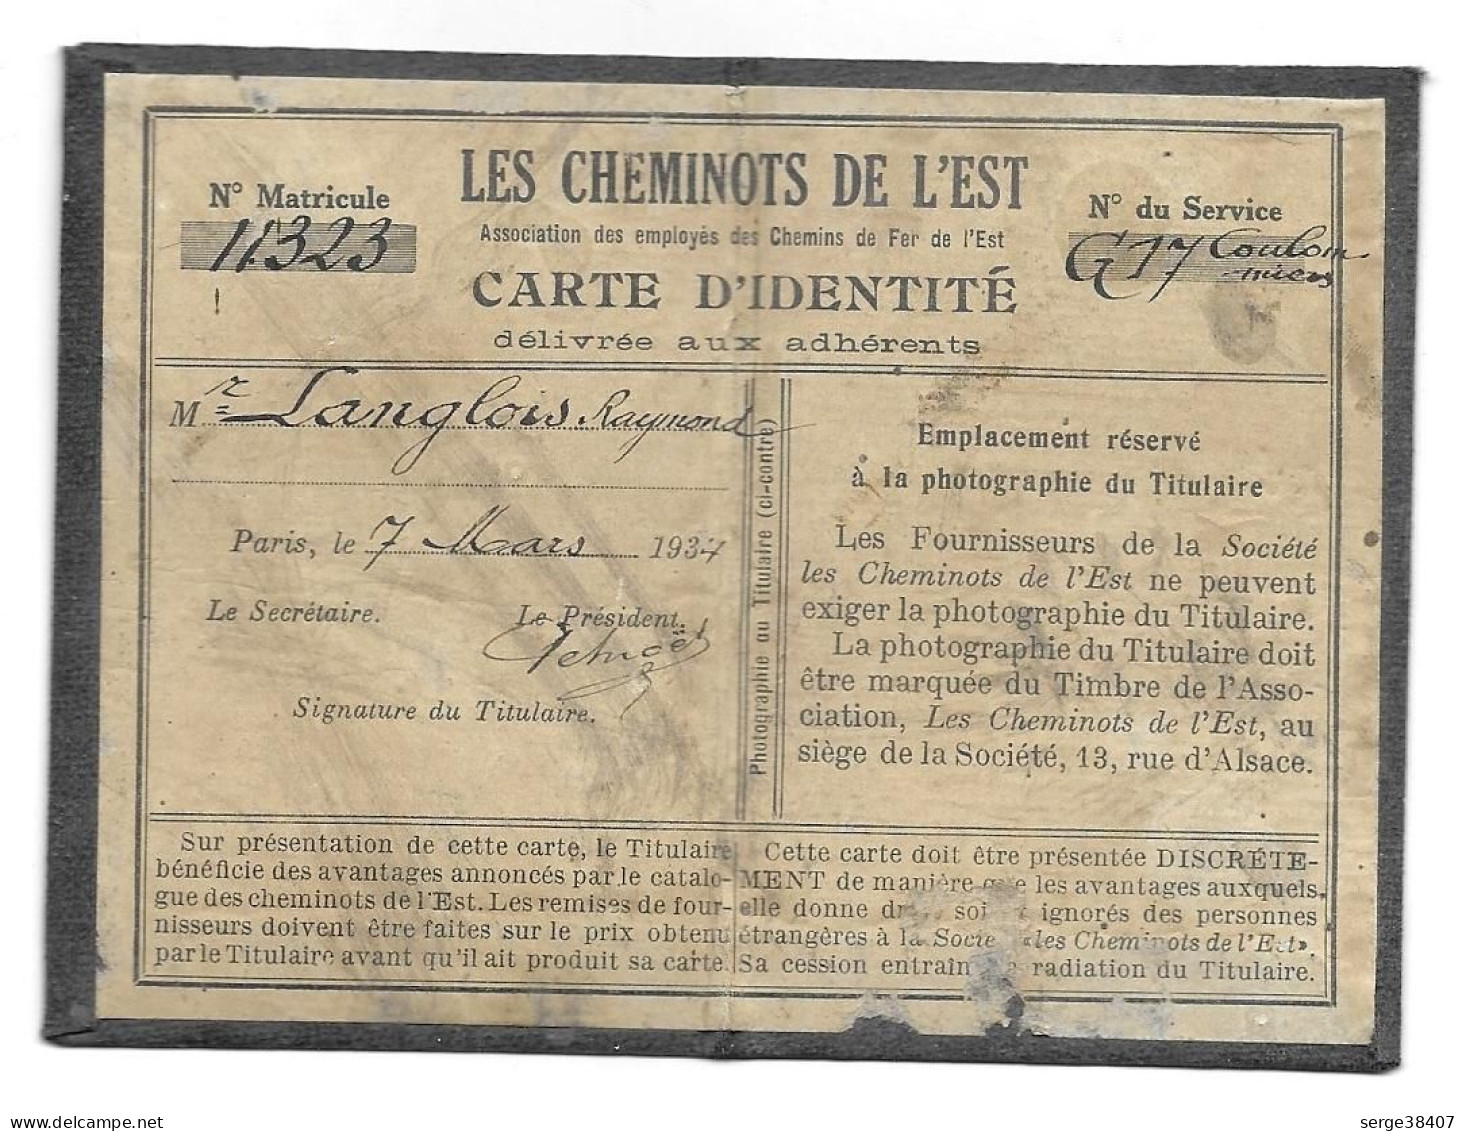 Les Cheminots De L'Est - Carte D'Identité - 1934 - Coulommiers - Langlois Raymond - Railway